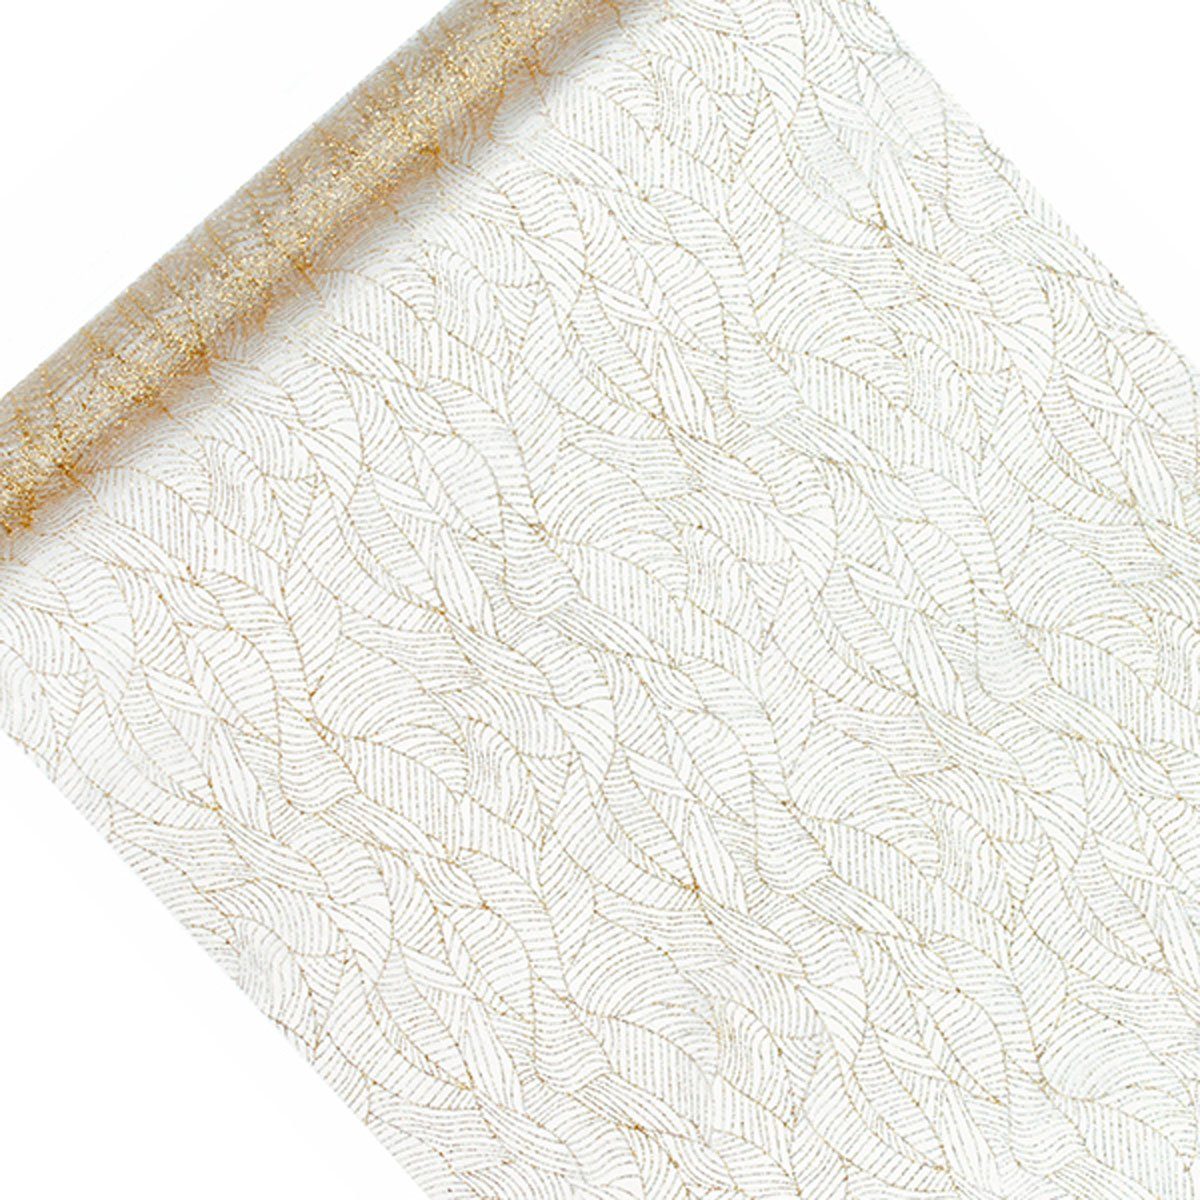 SCHÖNER LEBEN. Tischläufer Deko Tischband Blätter Organza 0,48x9m bedruckt gold weiß